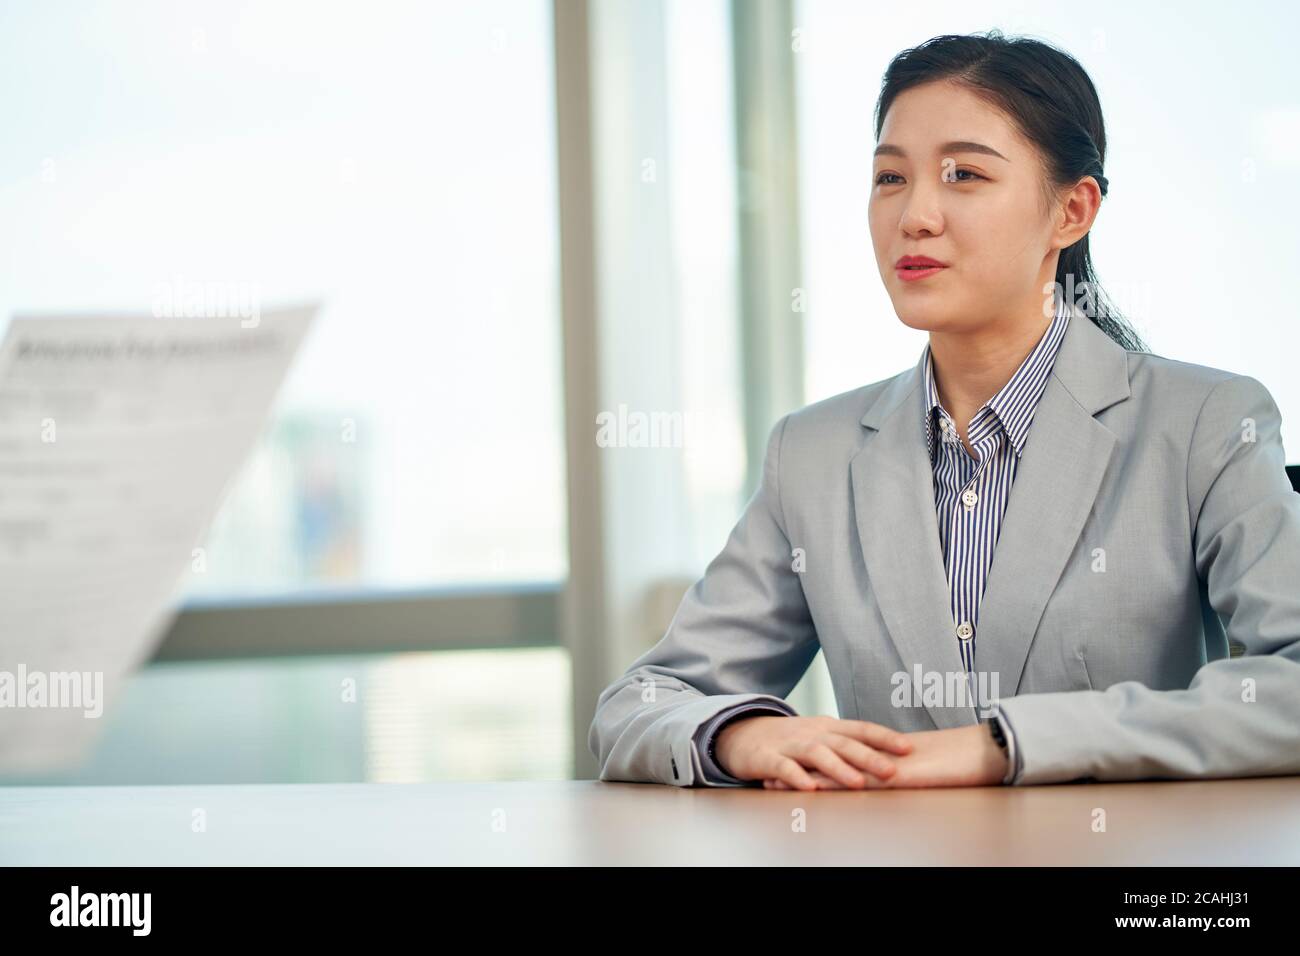 Junge asiatische Frau auf der Suche nach Beschäftigung im Gespräch mit Interviewer während des Vorstellungsgesprächs Stockfoto